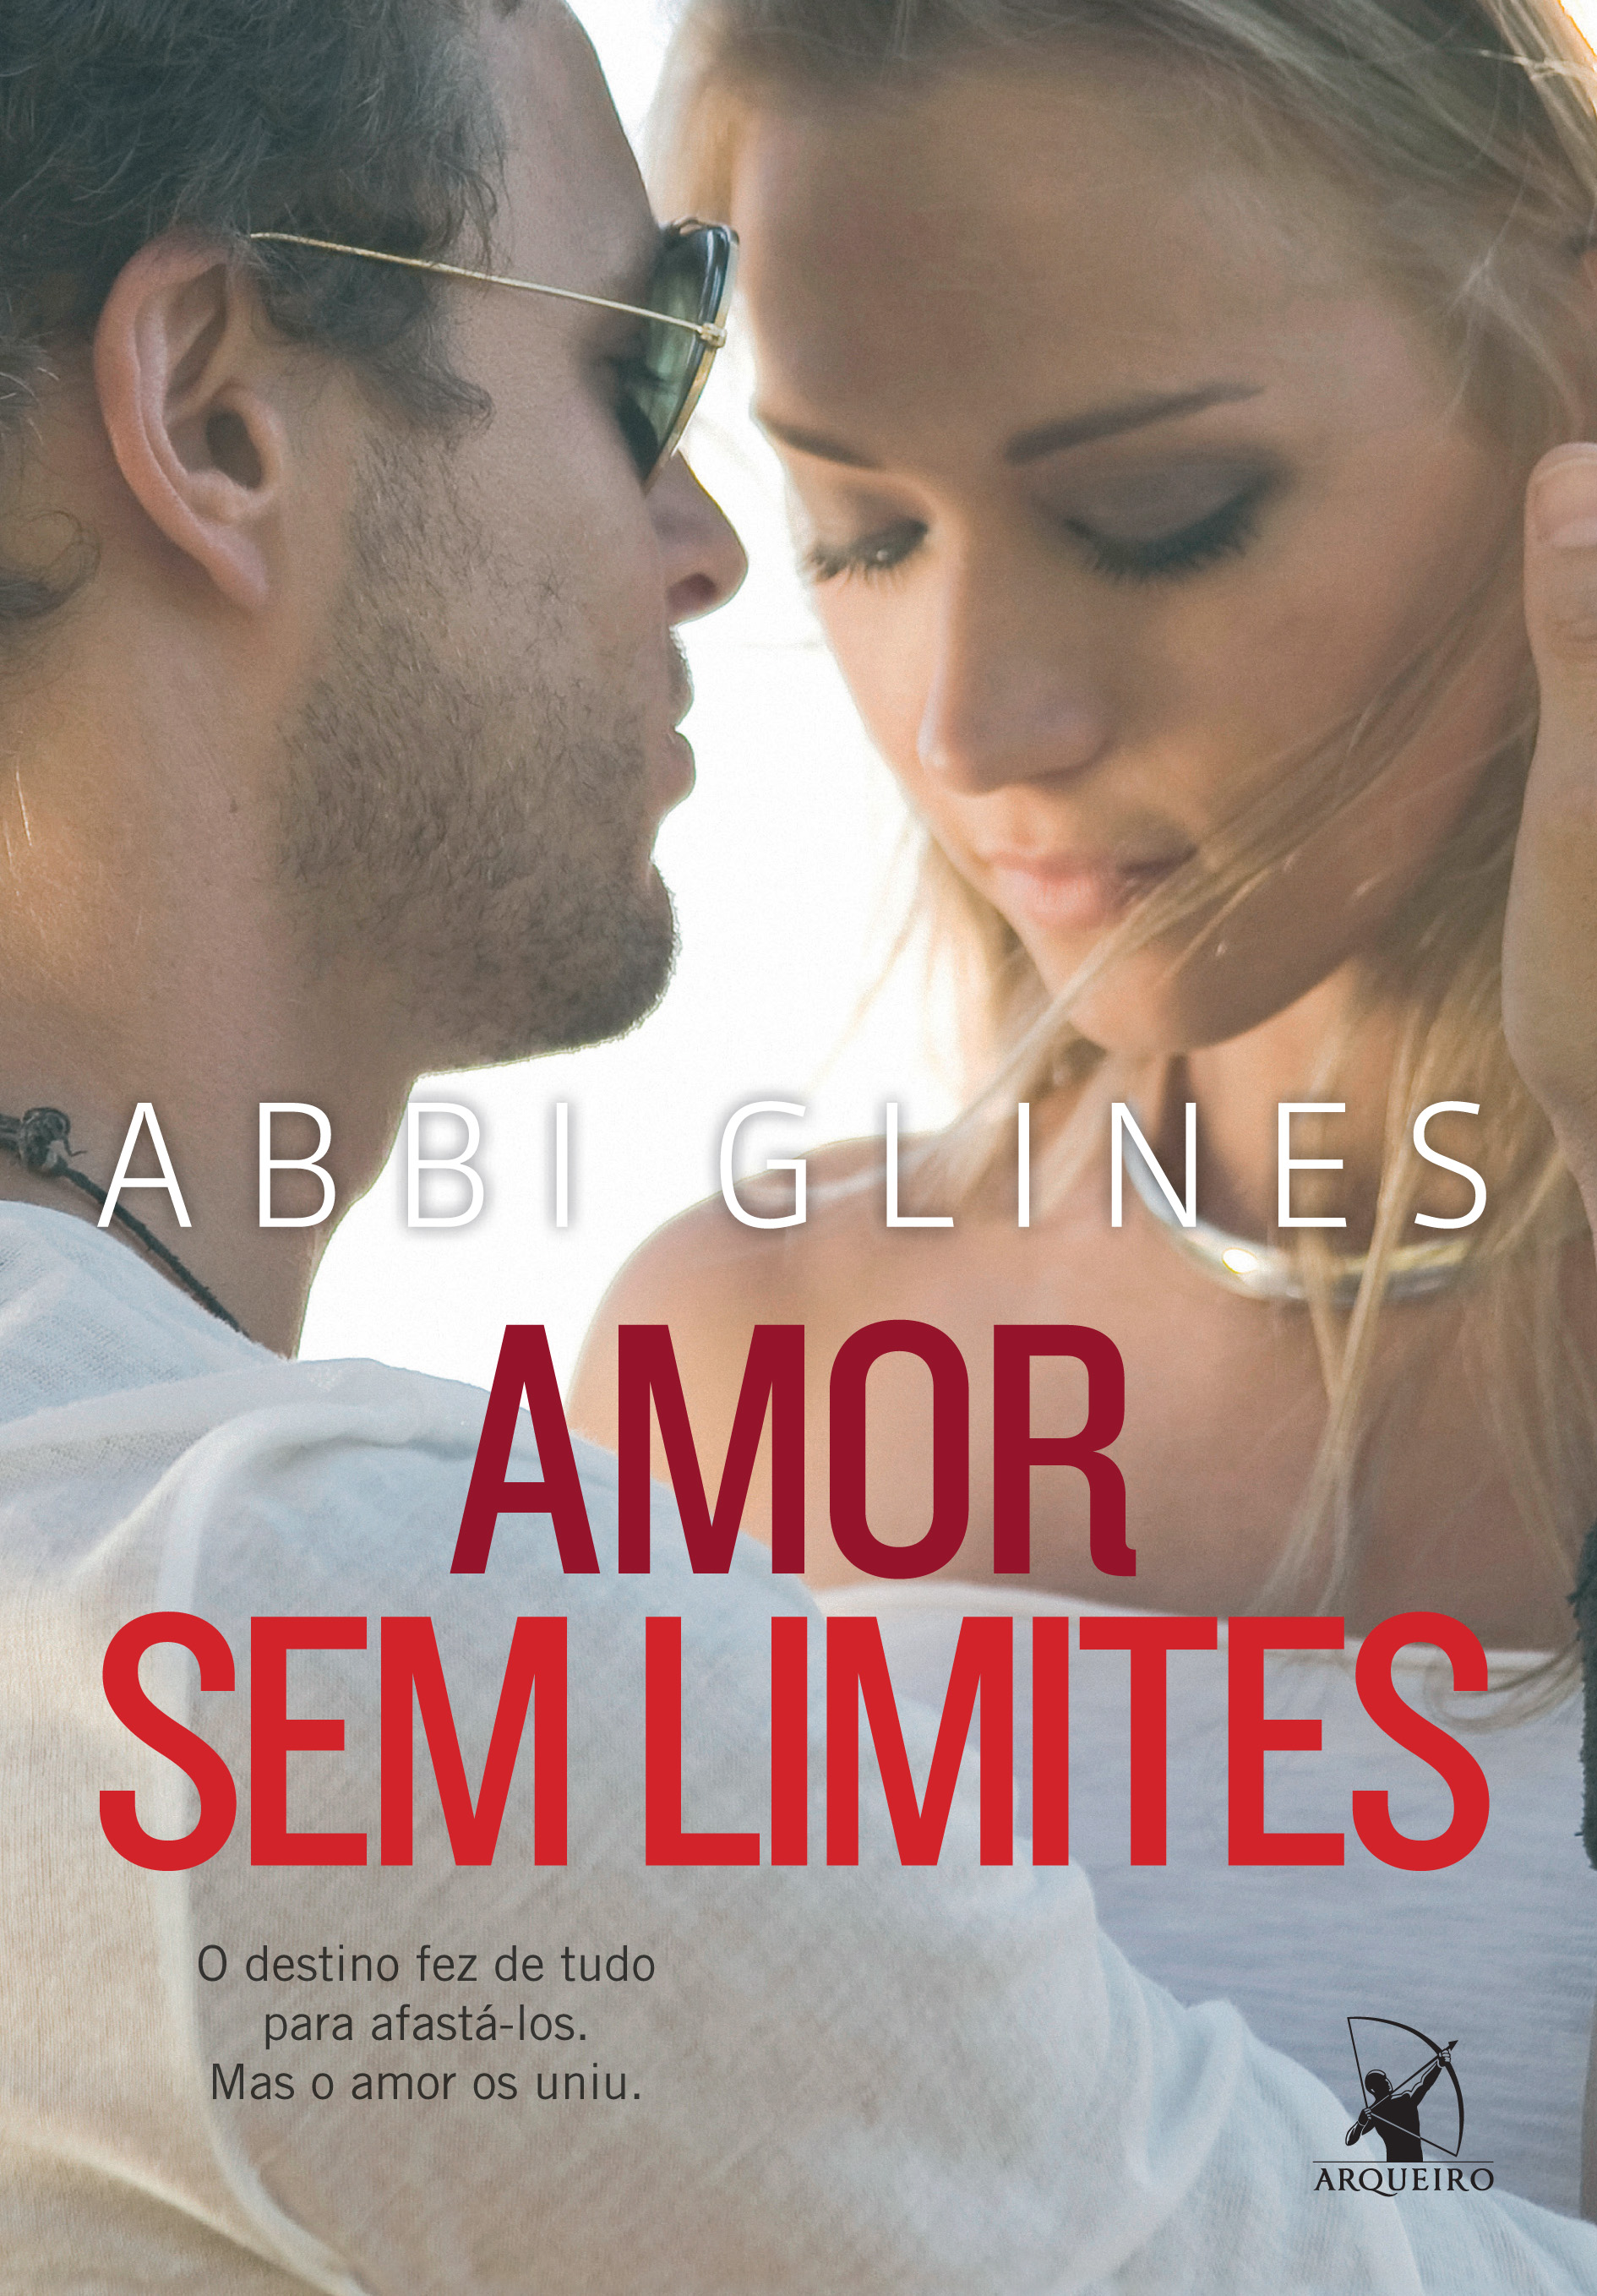 Jogo do Amor - Ao Vivo - song and lyrics by Desejo sem Limites